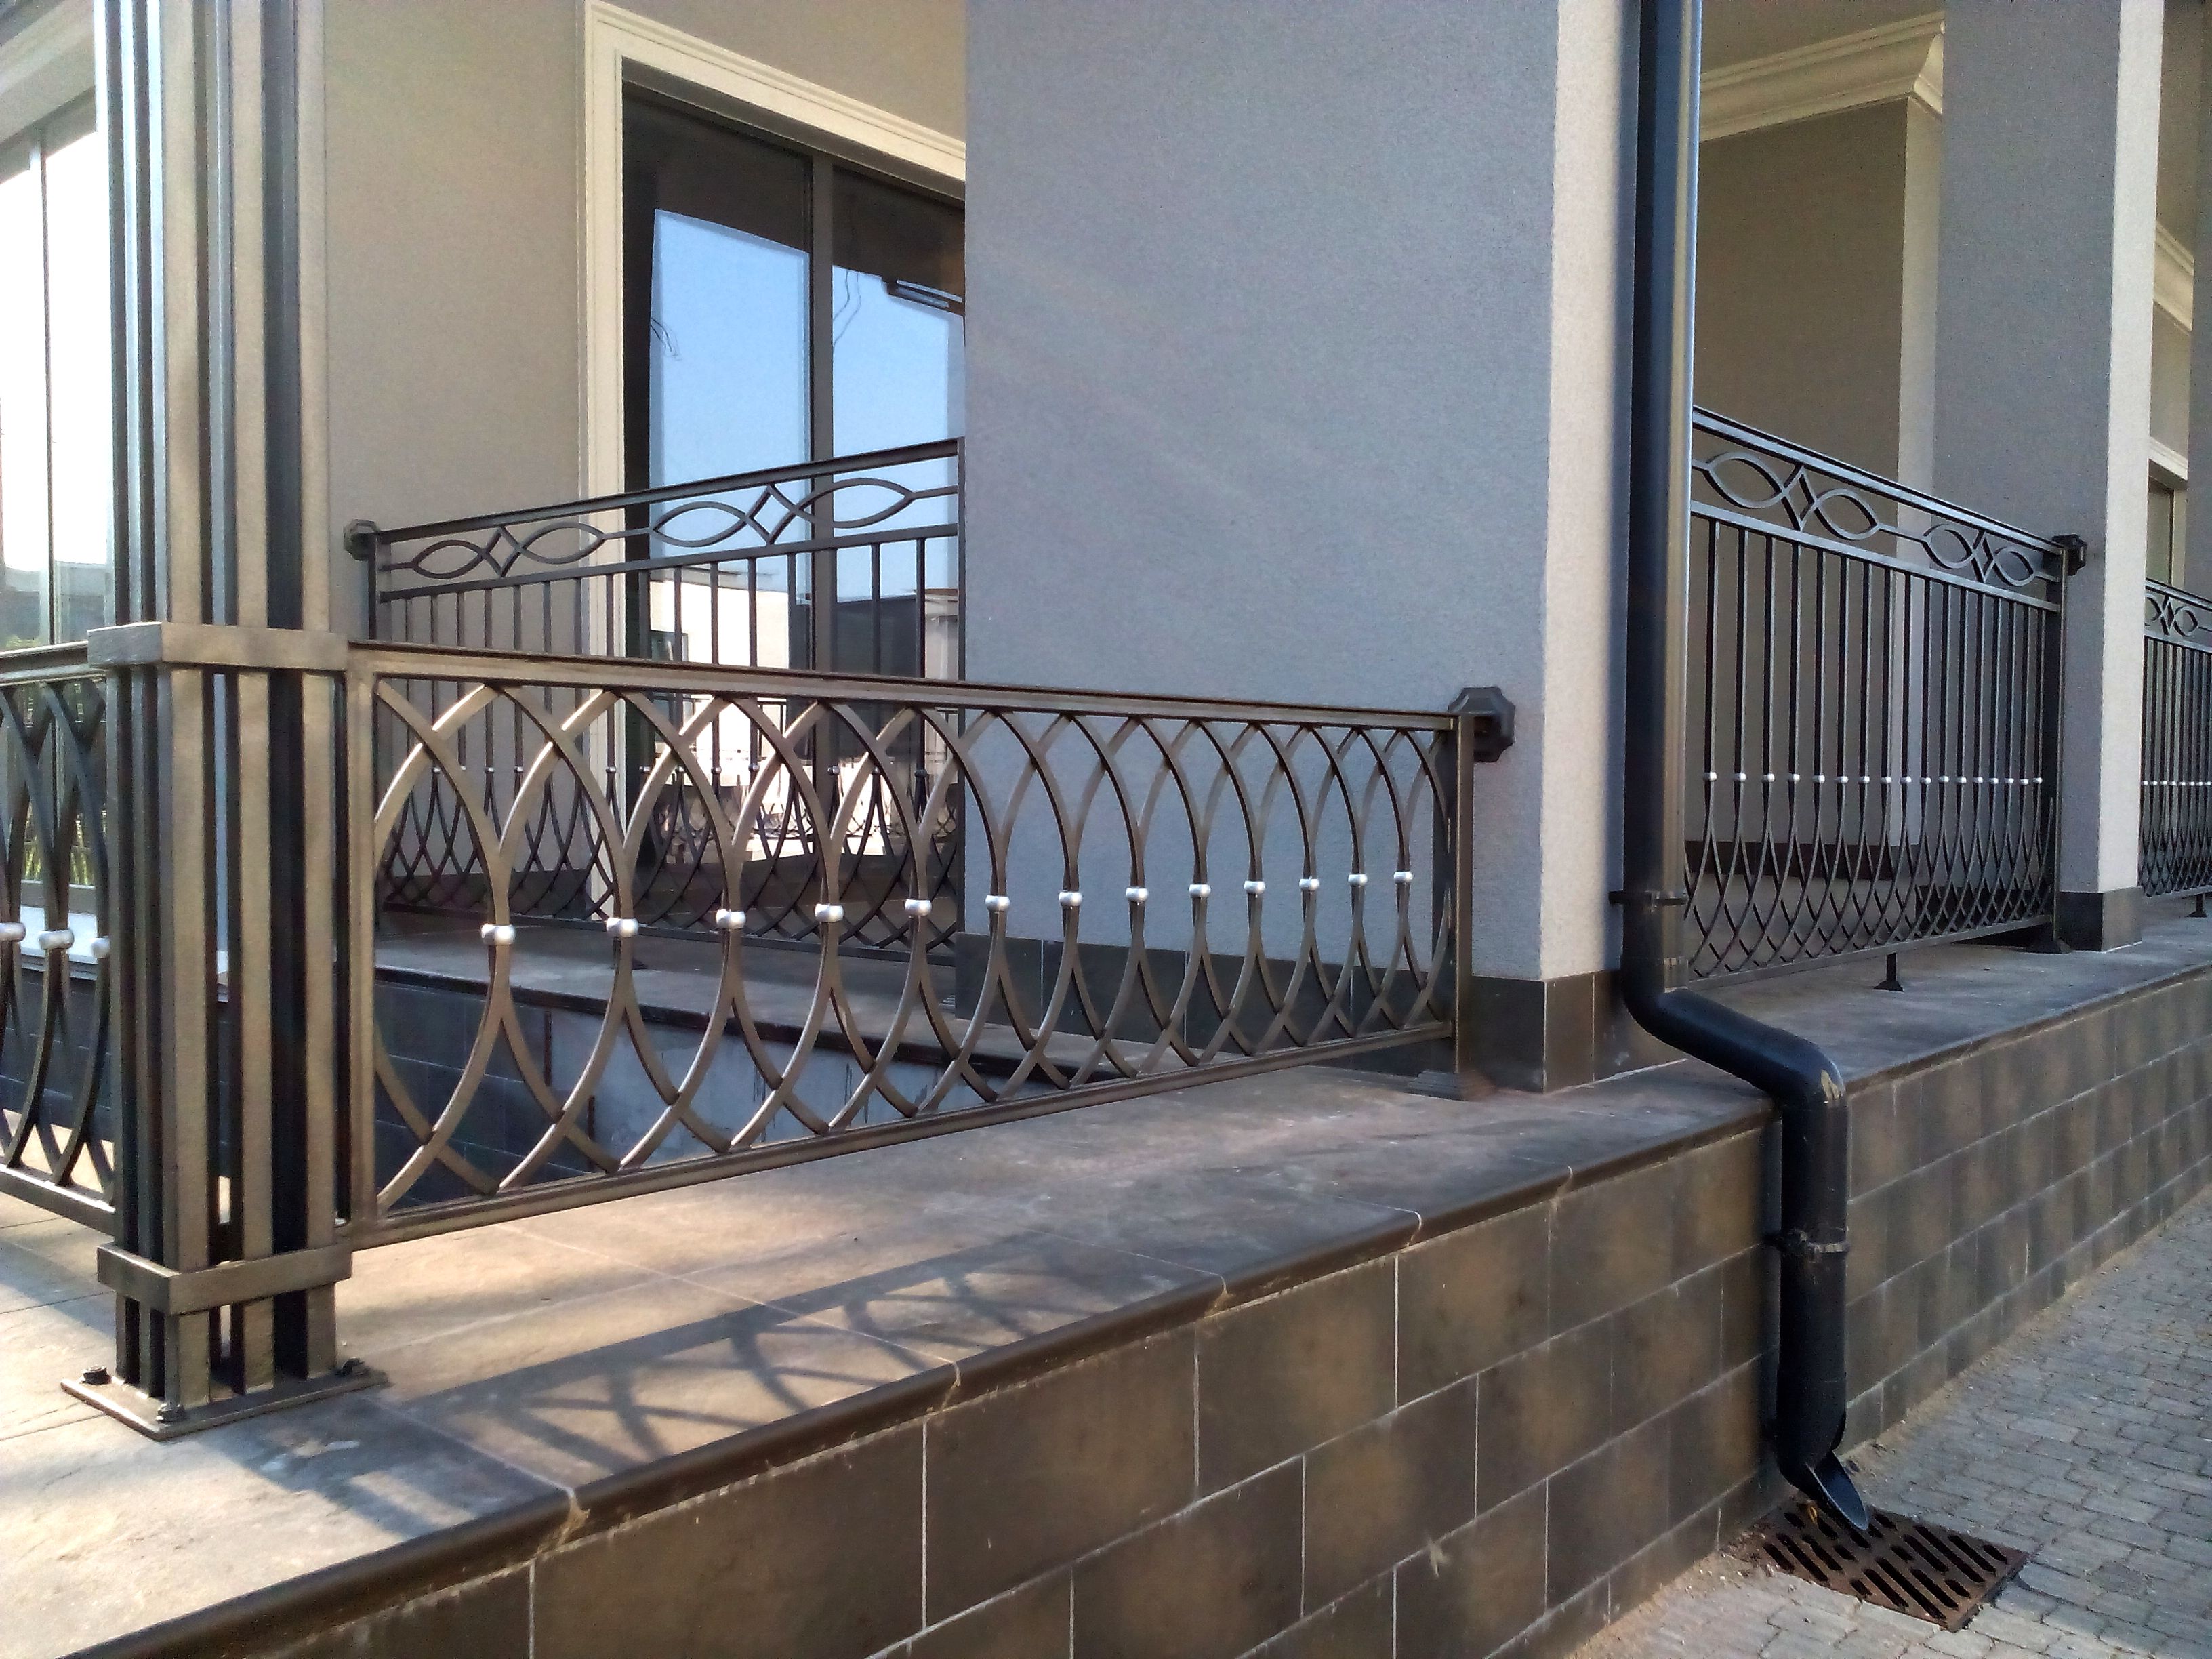 Высота перил на балконе – какой она должна быть по стандартам безопасности?